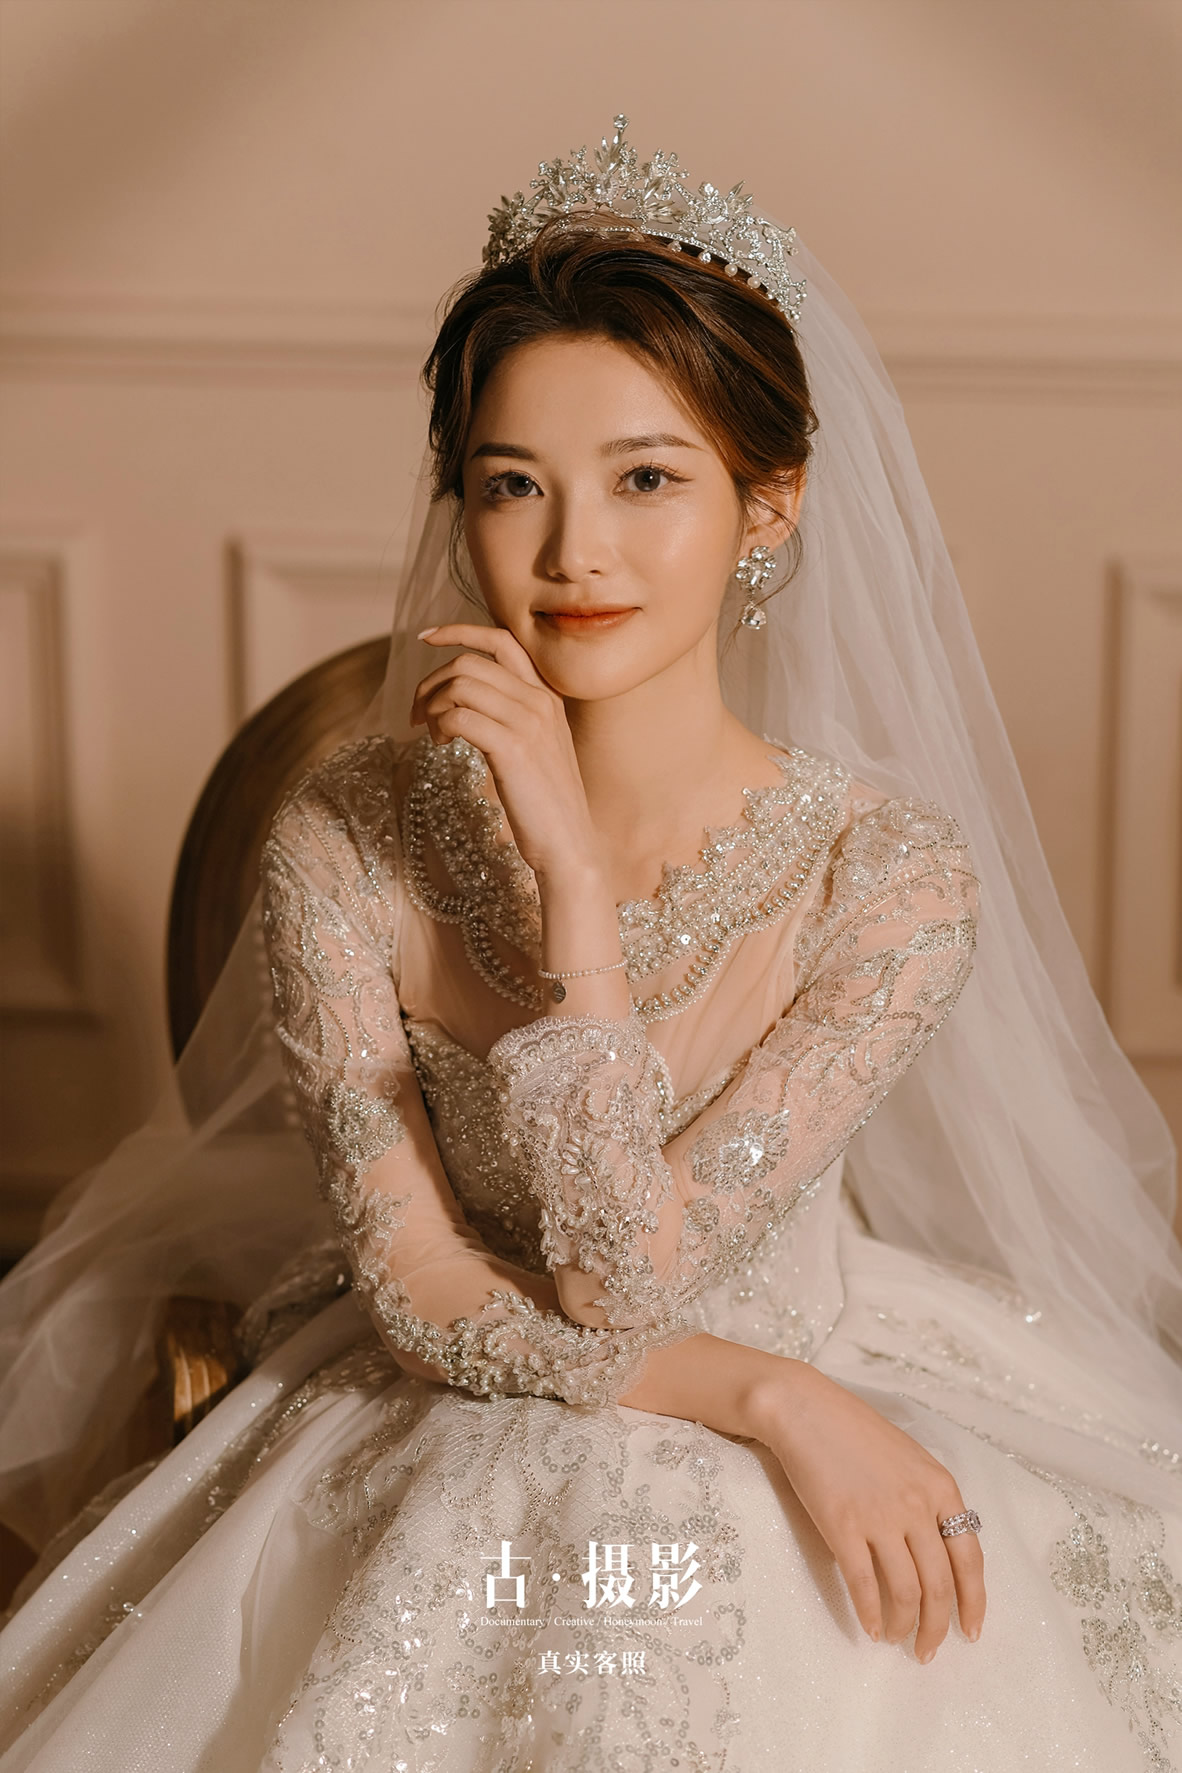 梁先生 林小姐 - 每日客照 - 广州婚纱摄影-广州古摄影官网